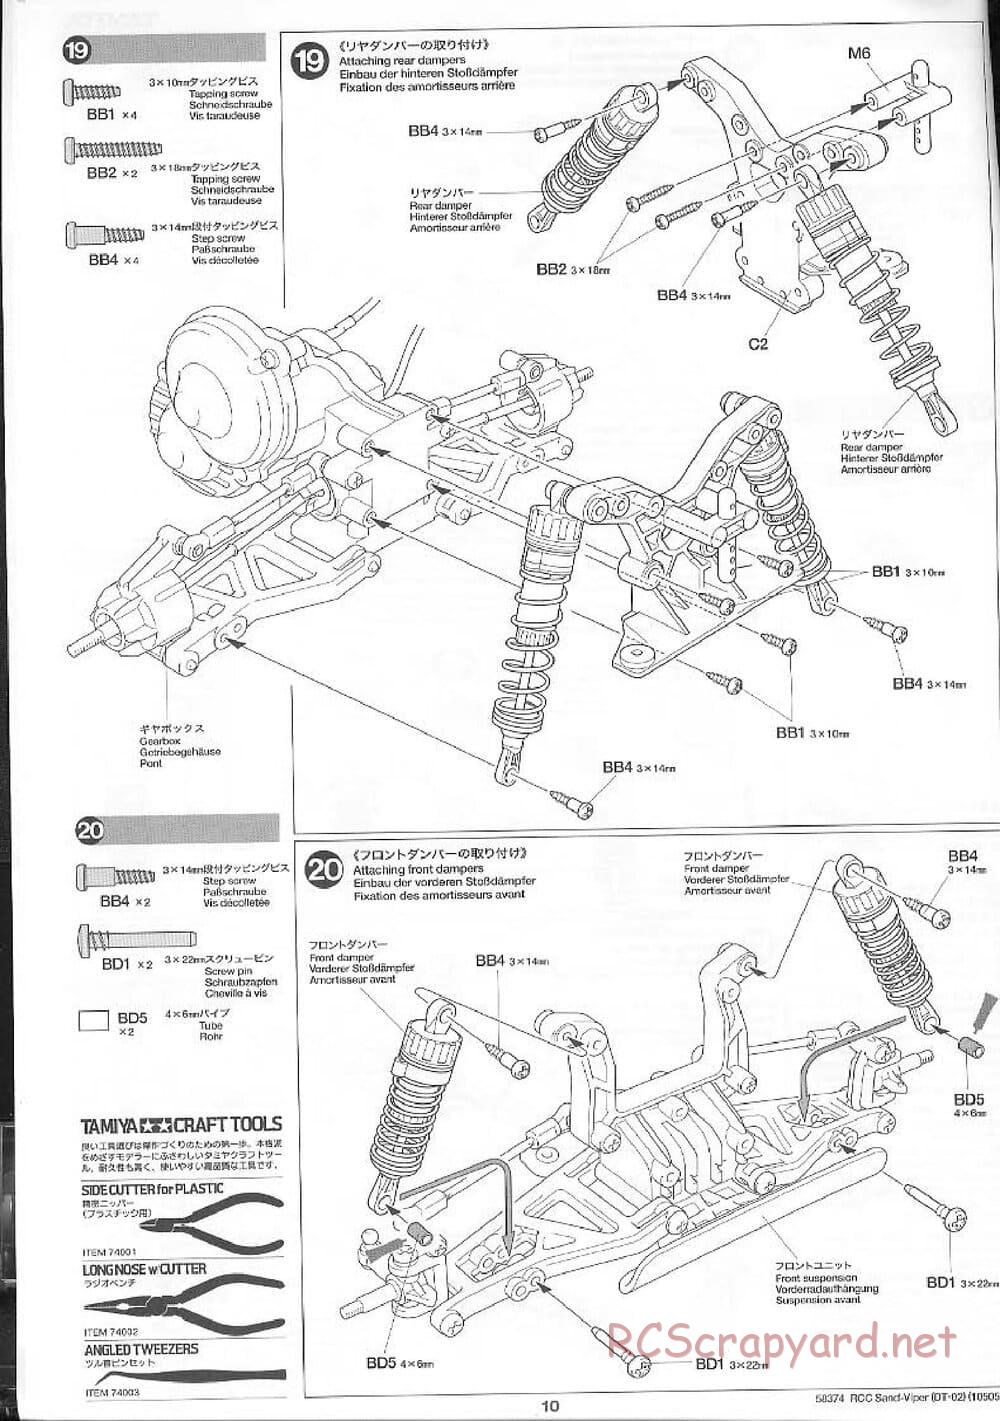 Tamiya - Sand Viper Chassis - Manual - Page 10